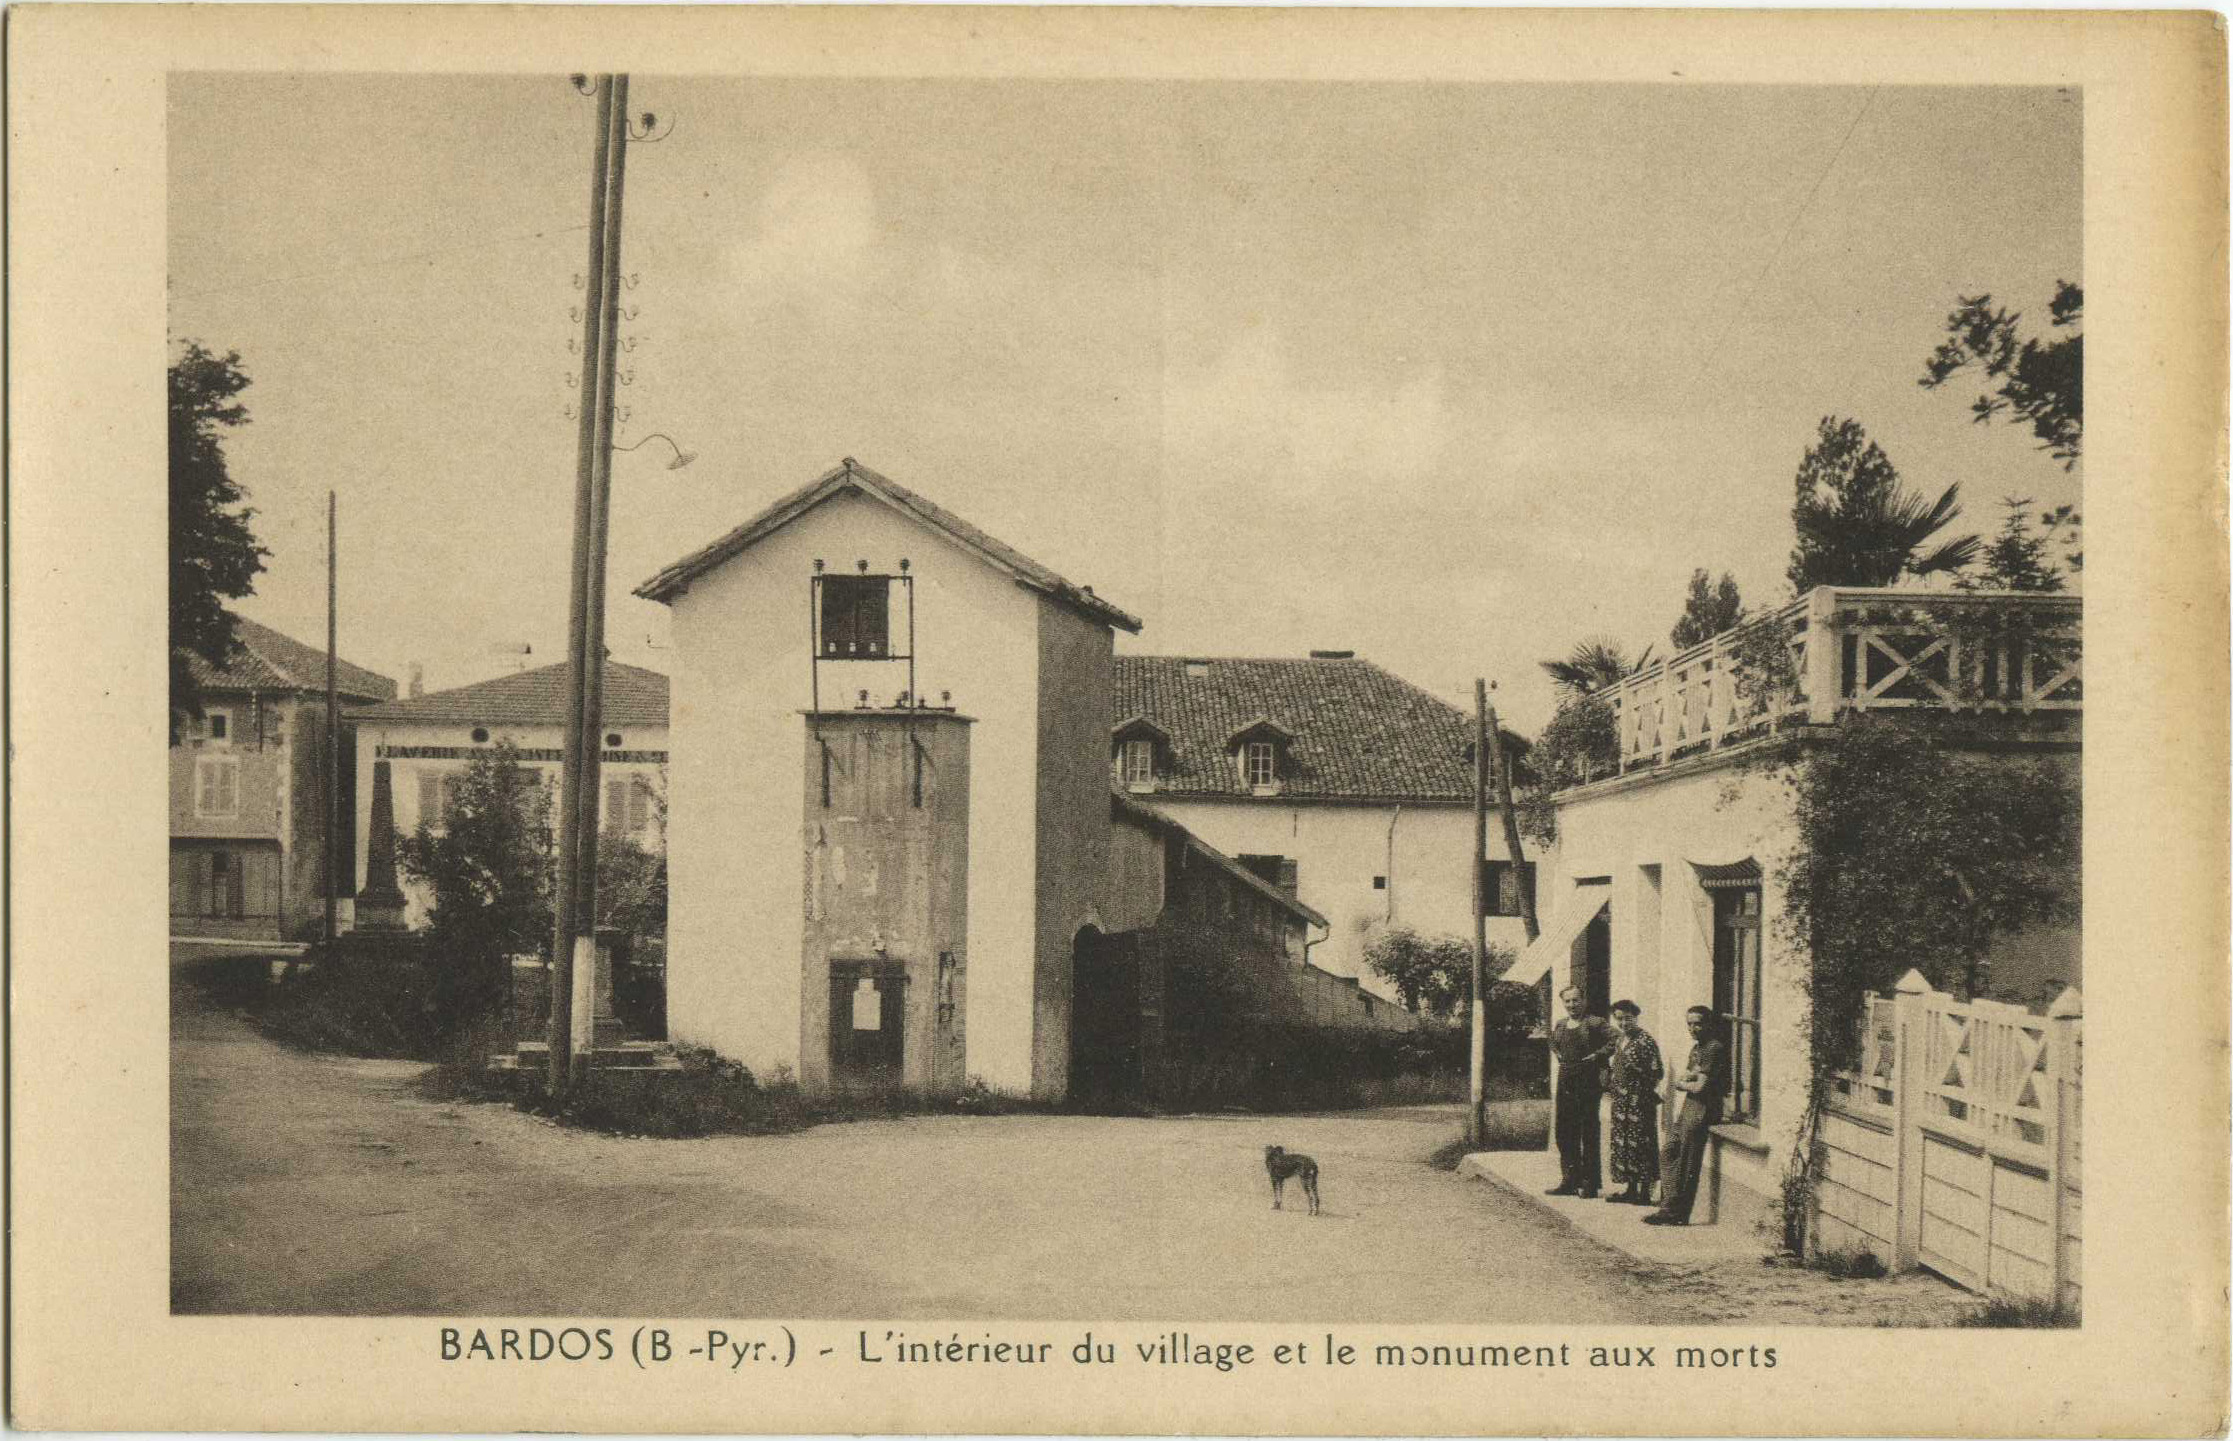 Bardos - L'intérieur du village et le monument aux morts